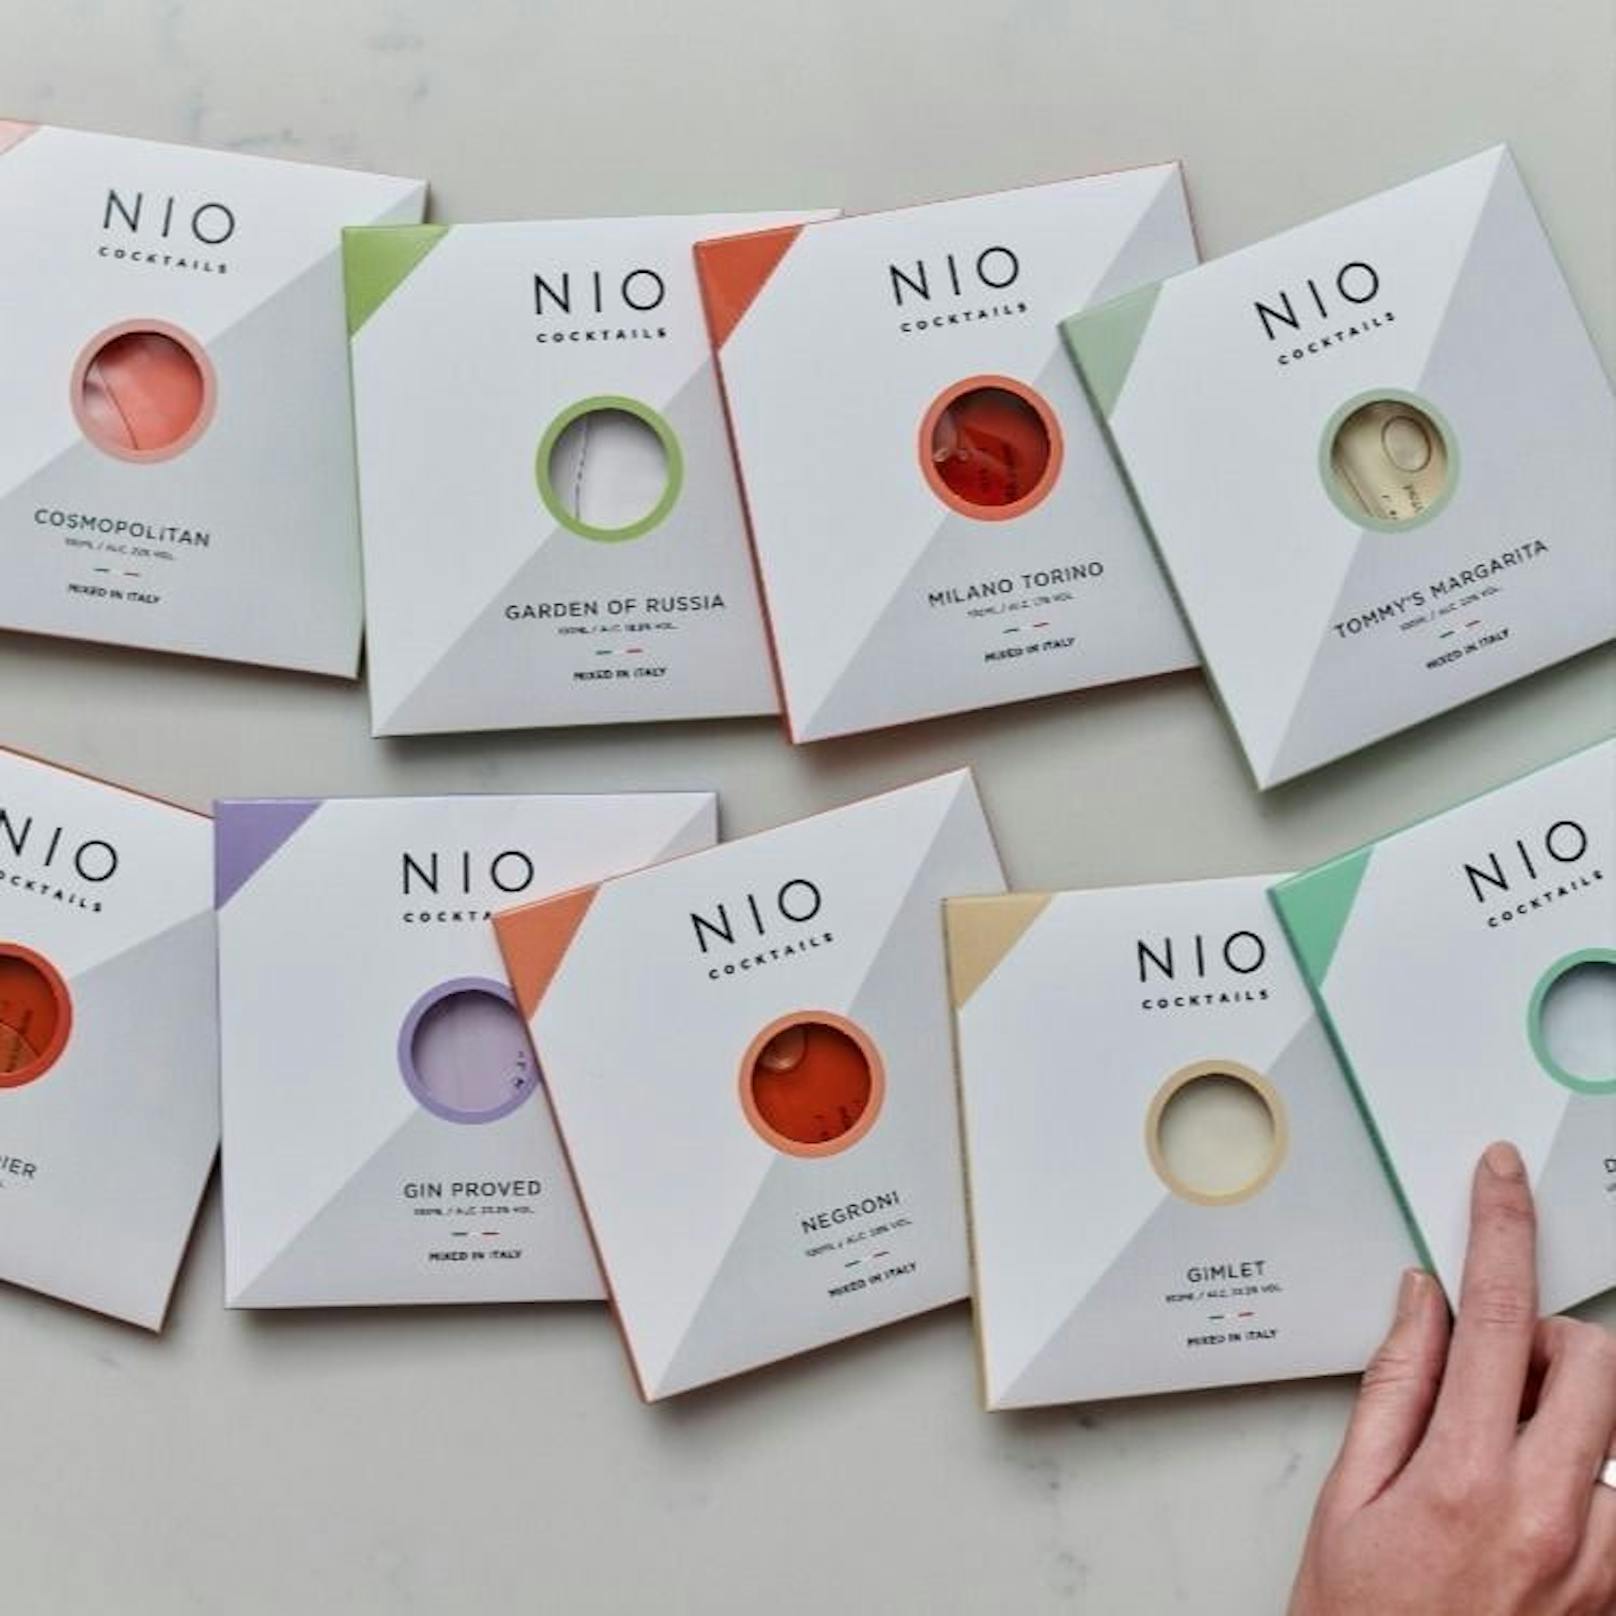 Welchen sollen wir als ersten testen? Die Auswahl von NIO Cocktails ist sehr groß. 